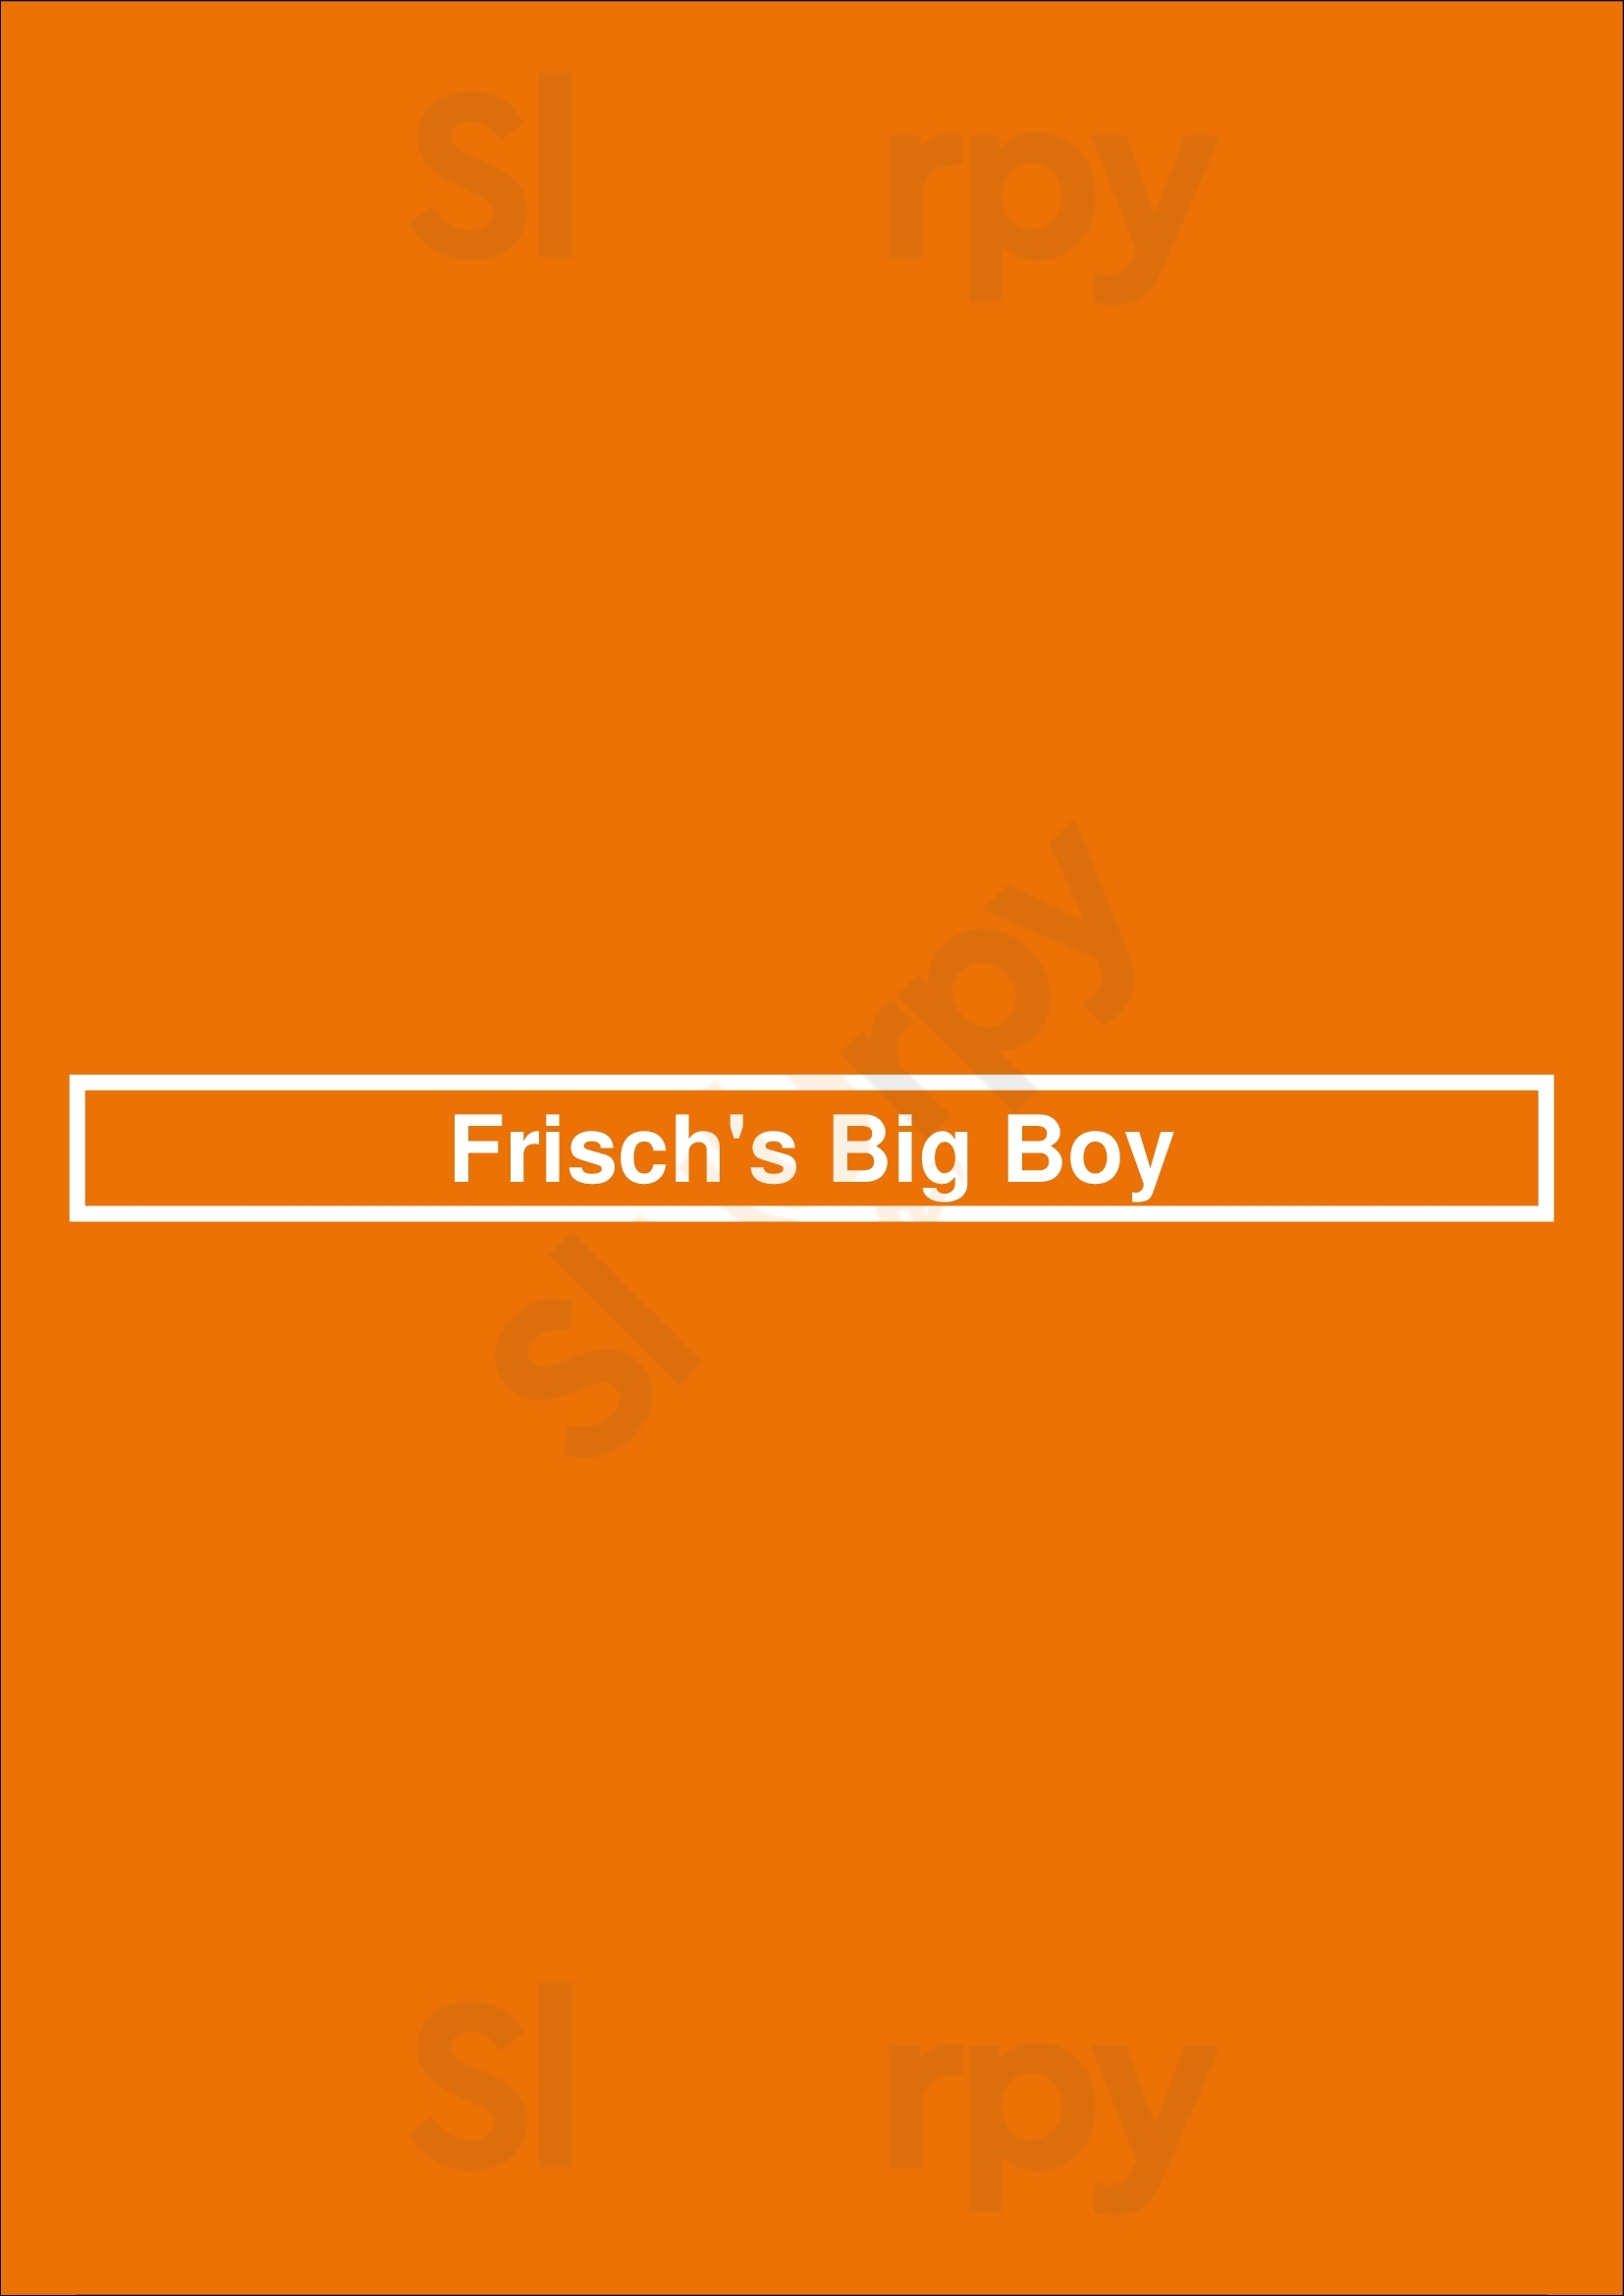 Frisch's Big Boy Middletown Menu - 1